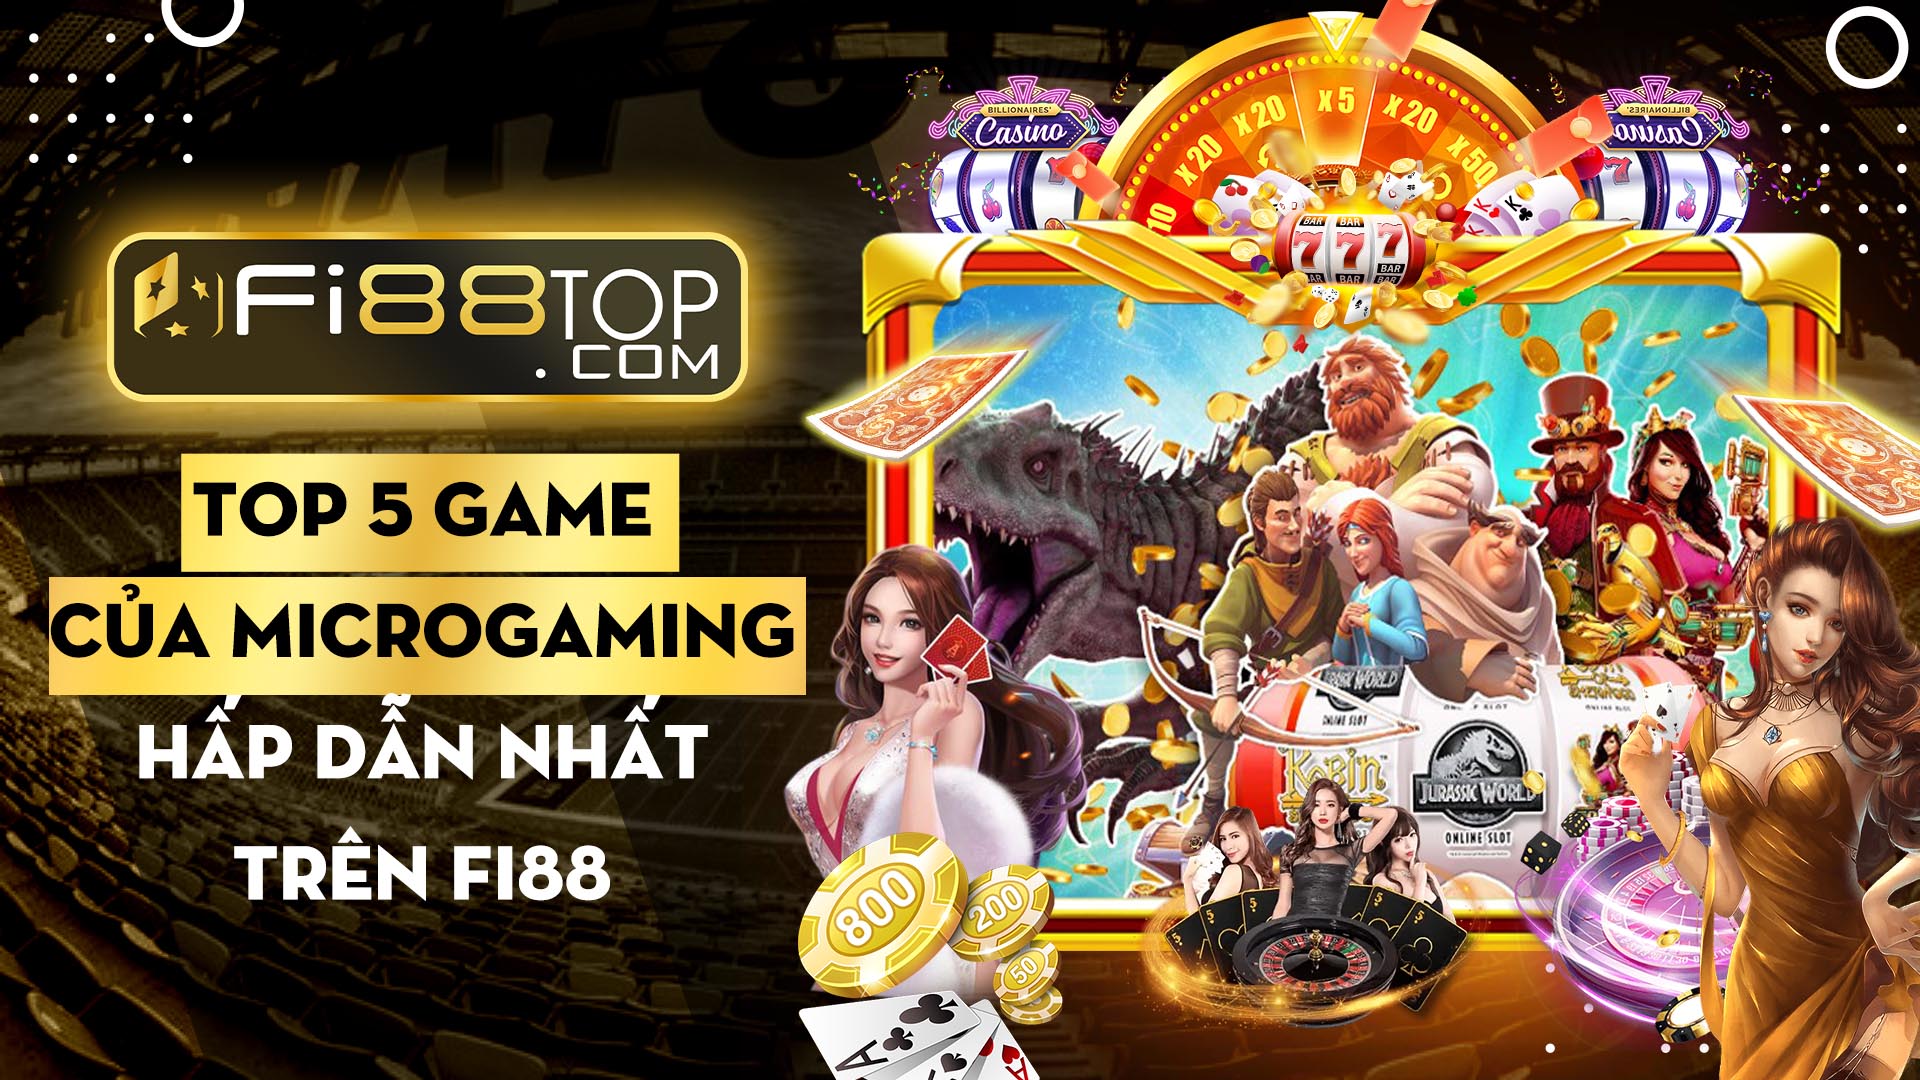 Top 5 sản phẩm game của Microgaming casino hấp dẫn nhất trên FI88